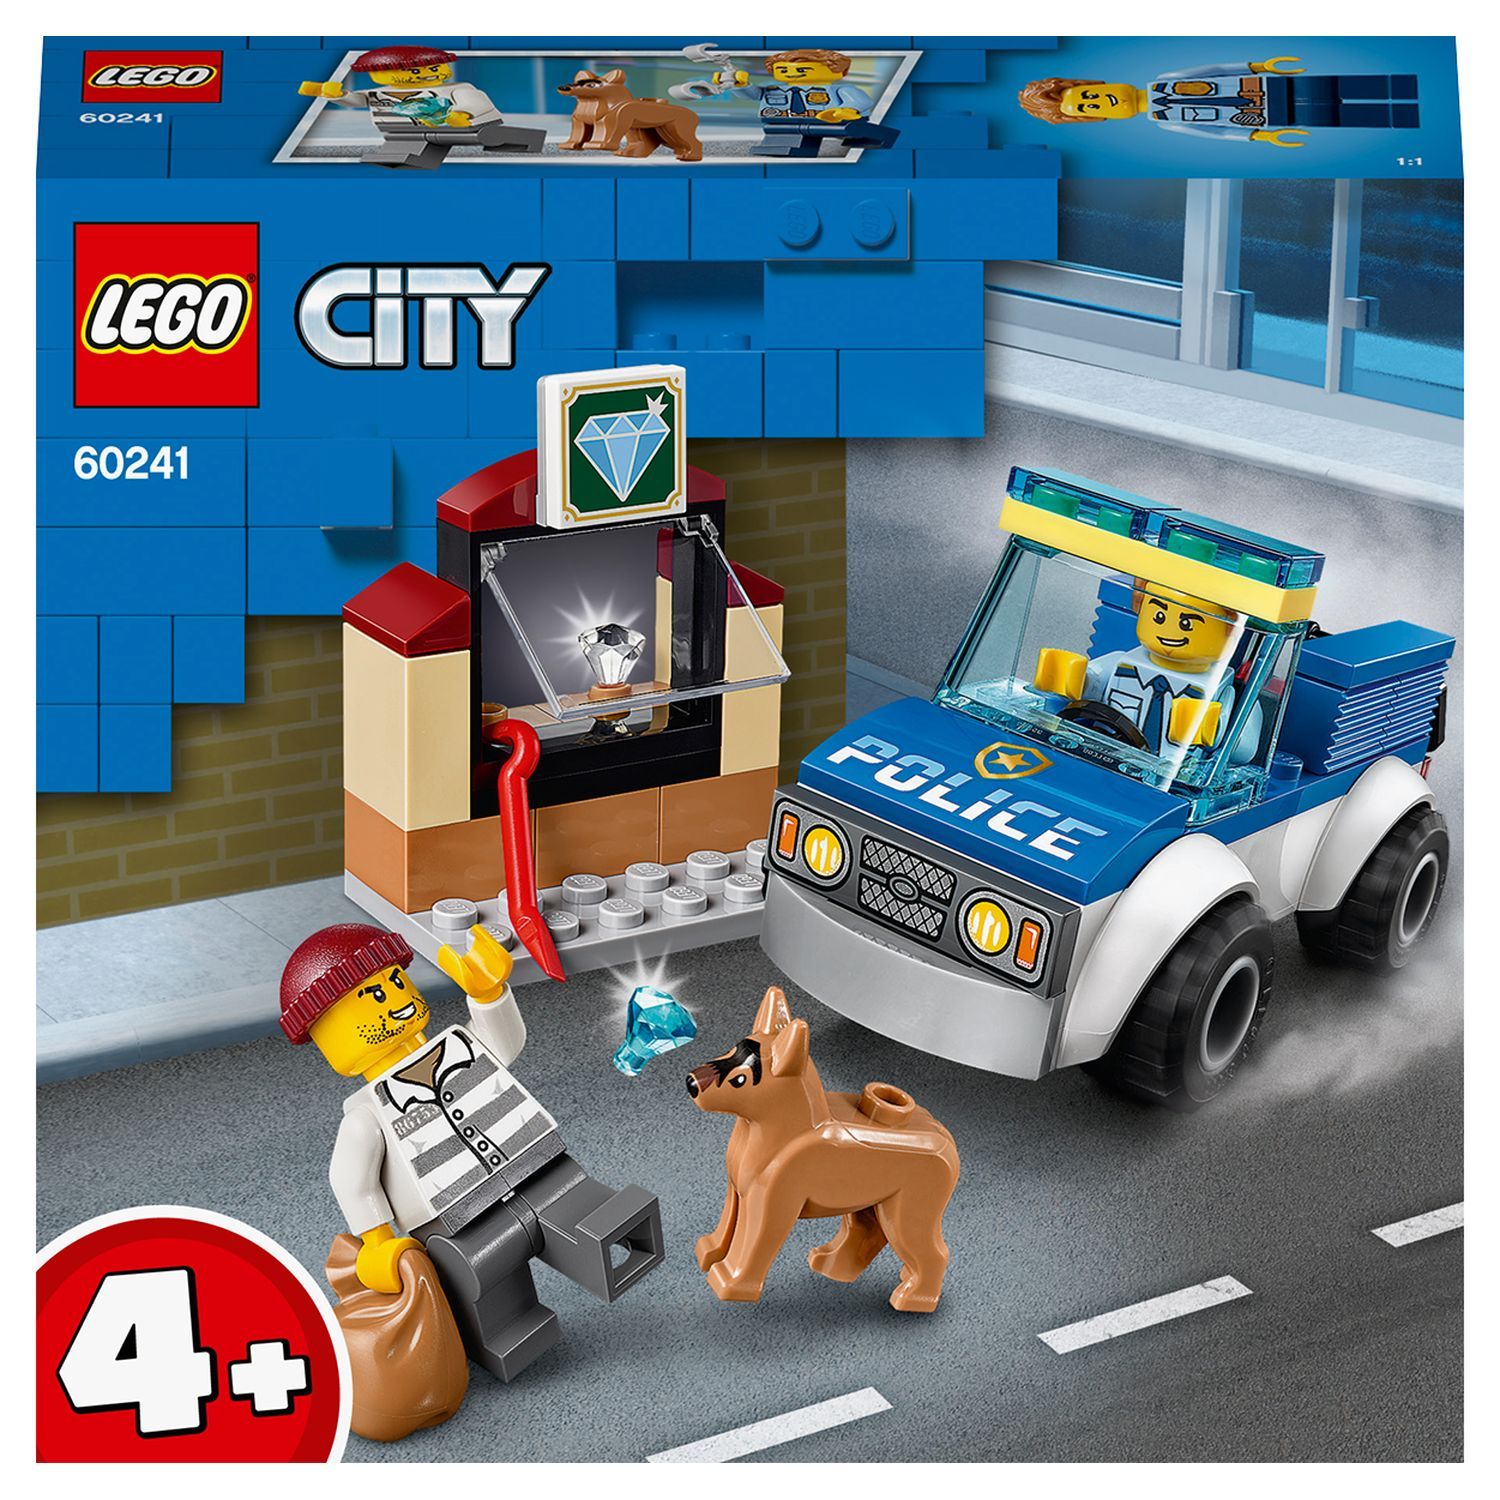 LEGO City 60282 - L’unité de commandement des pompiers pas